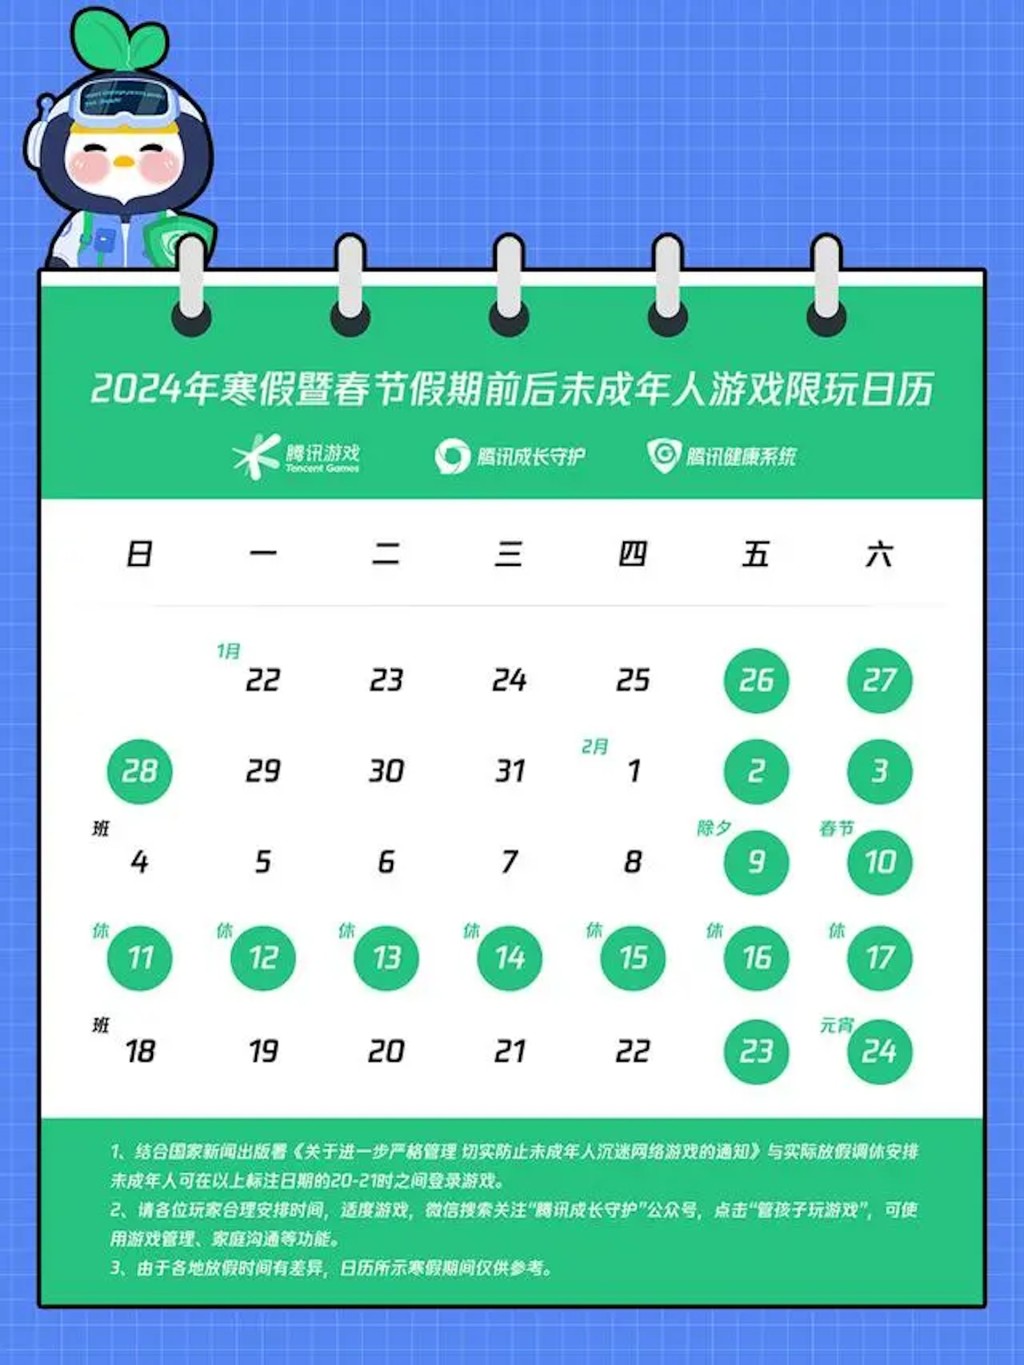 騰訊推出寒假春節限玩令，未成年者期間最多只能玩騰訊旗下遊戲16小時。